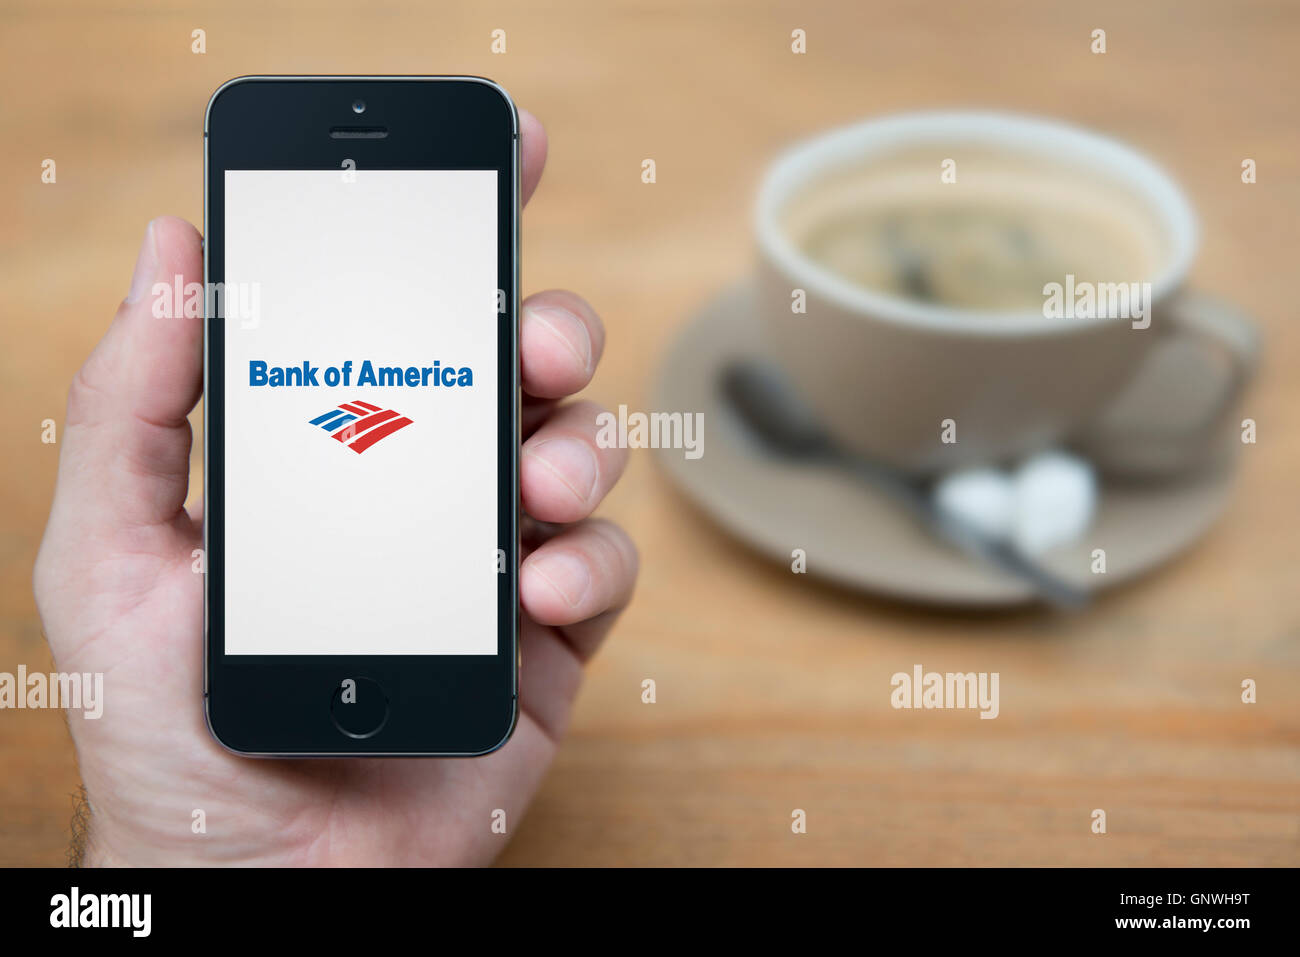 Un hombre mira el iPhone que muestra el logo de Bank of America, mientras que se sentó con una taza de café (uso Editorial solamente). Foto de stock